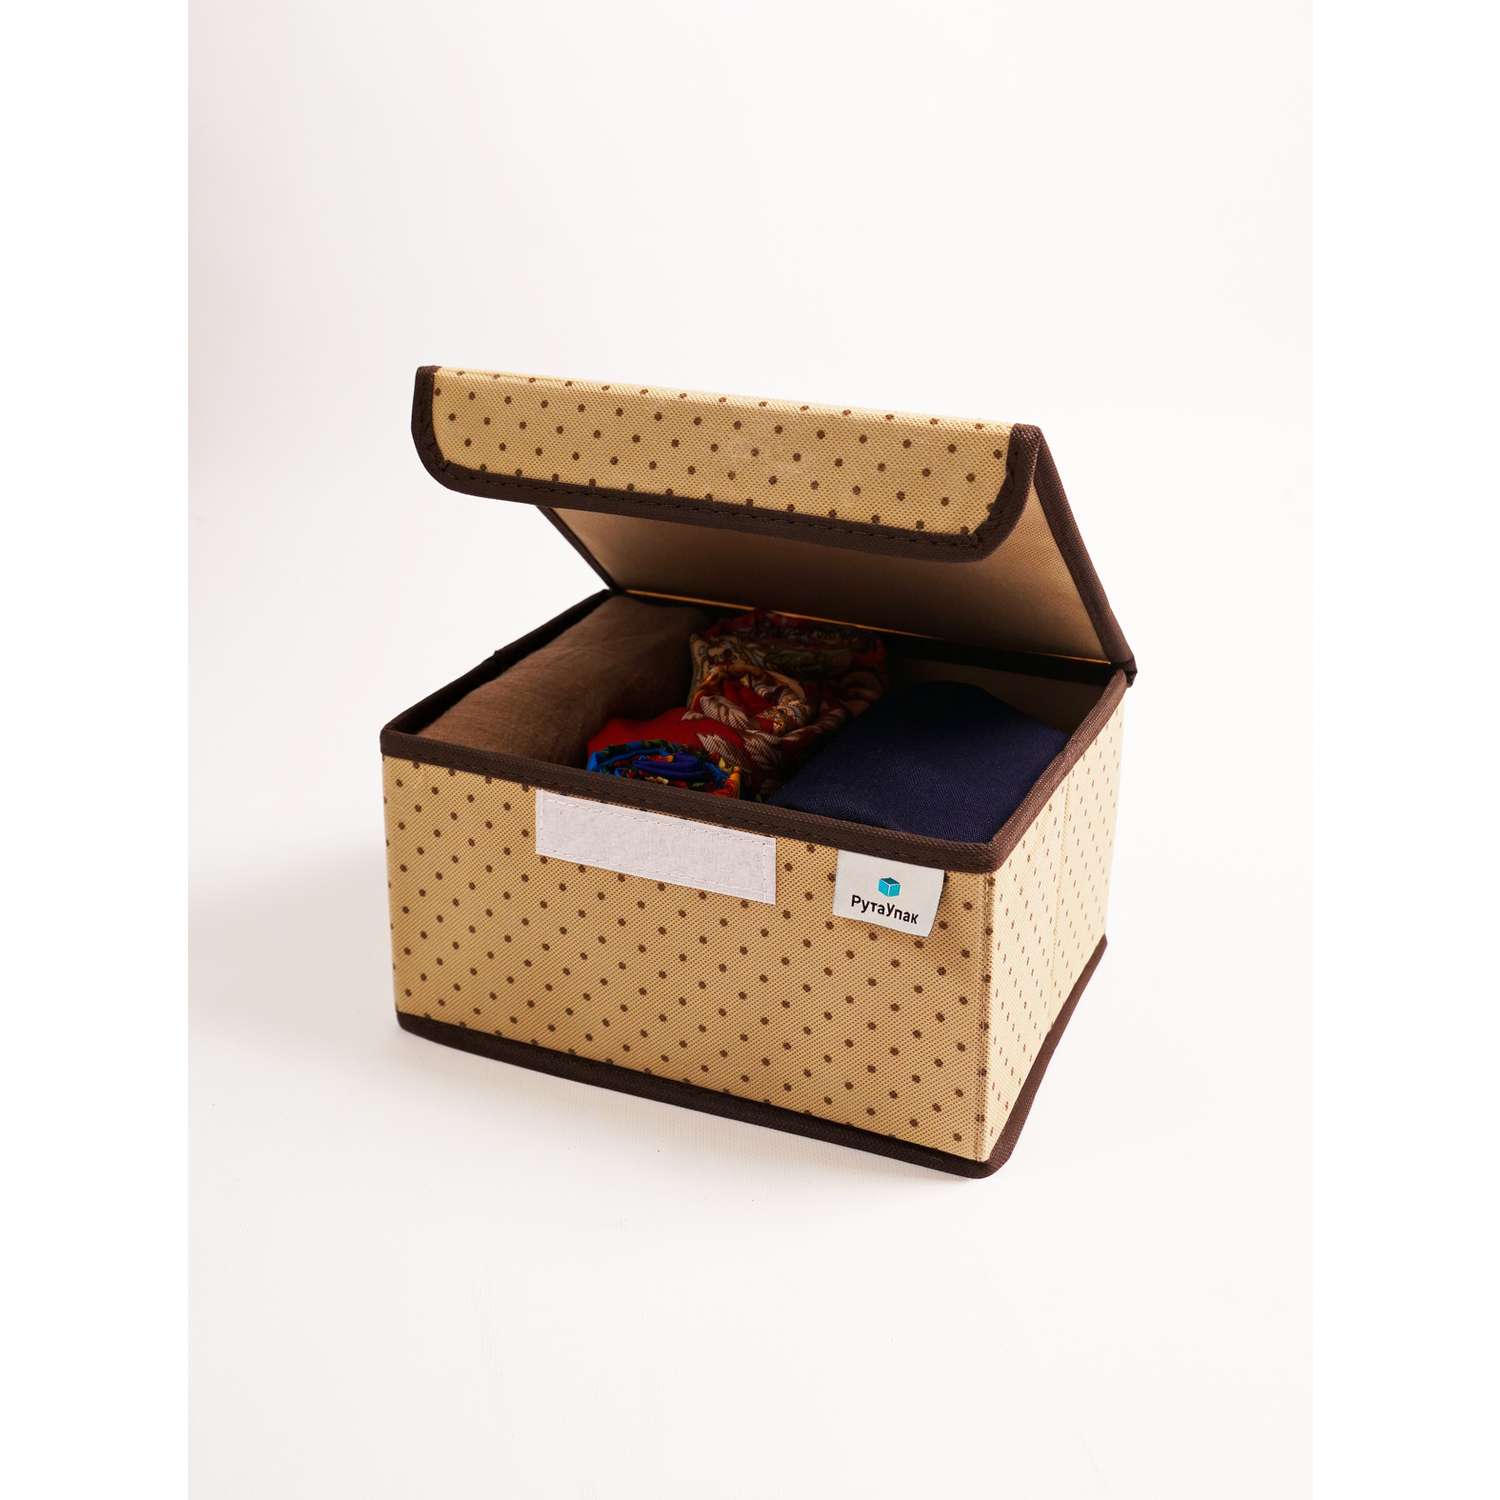 Коробка для хранения РутаУпак Горох - фото 5